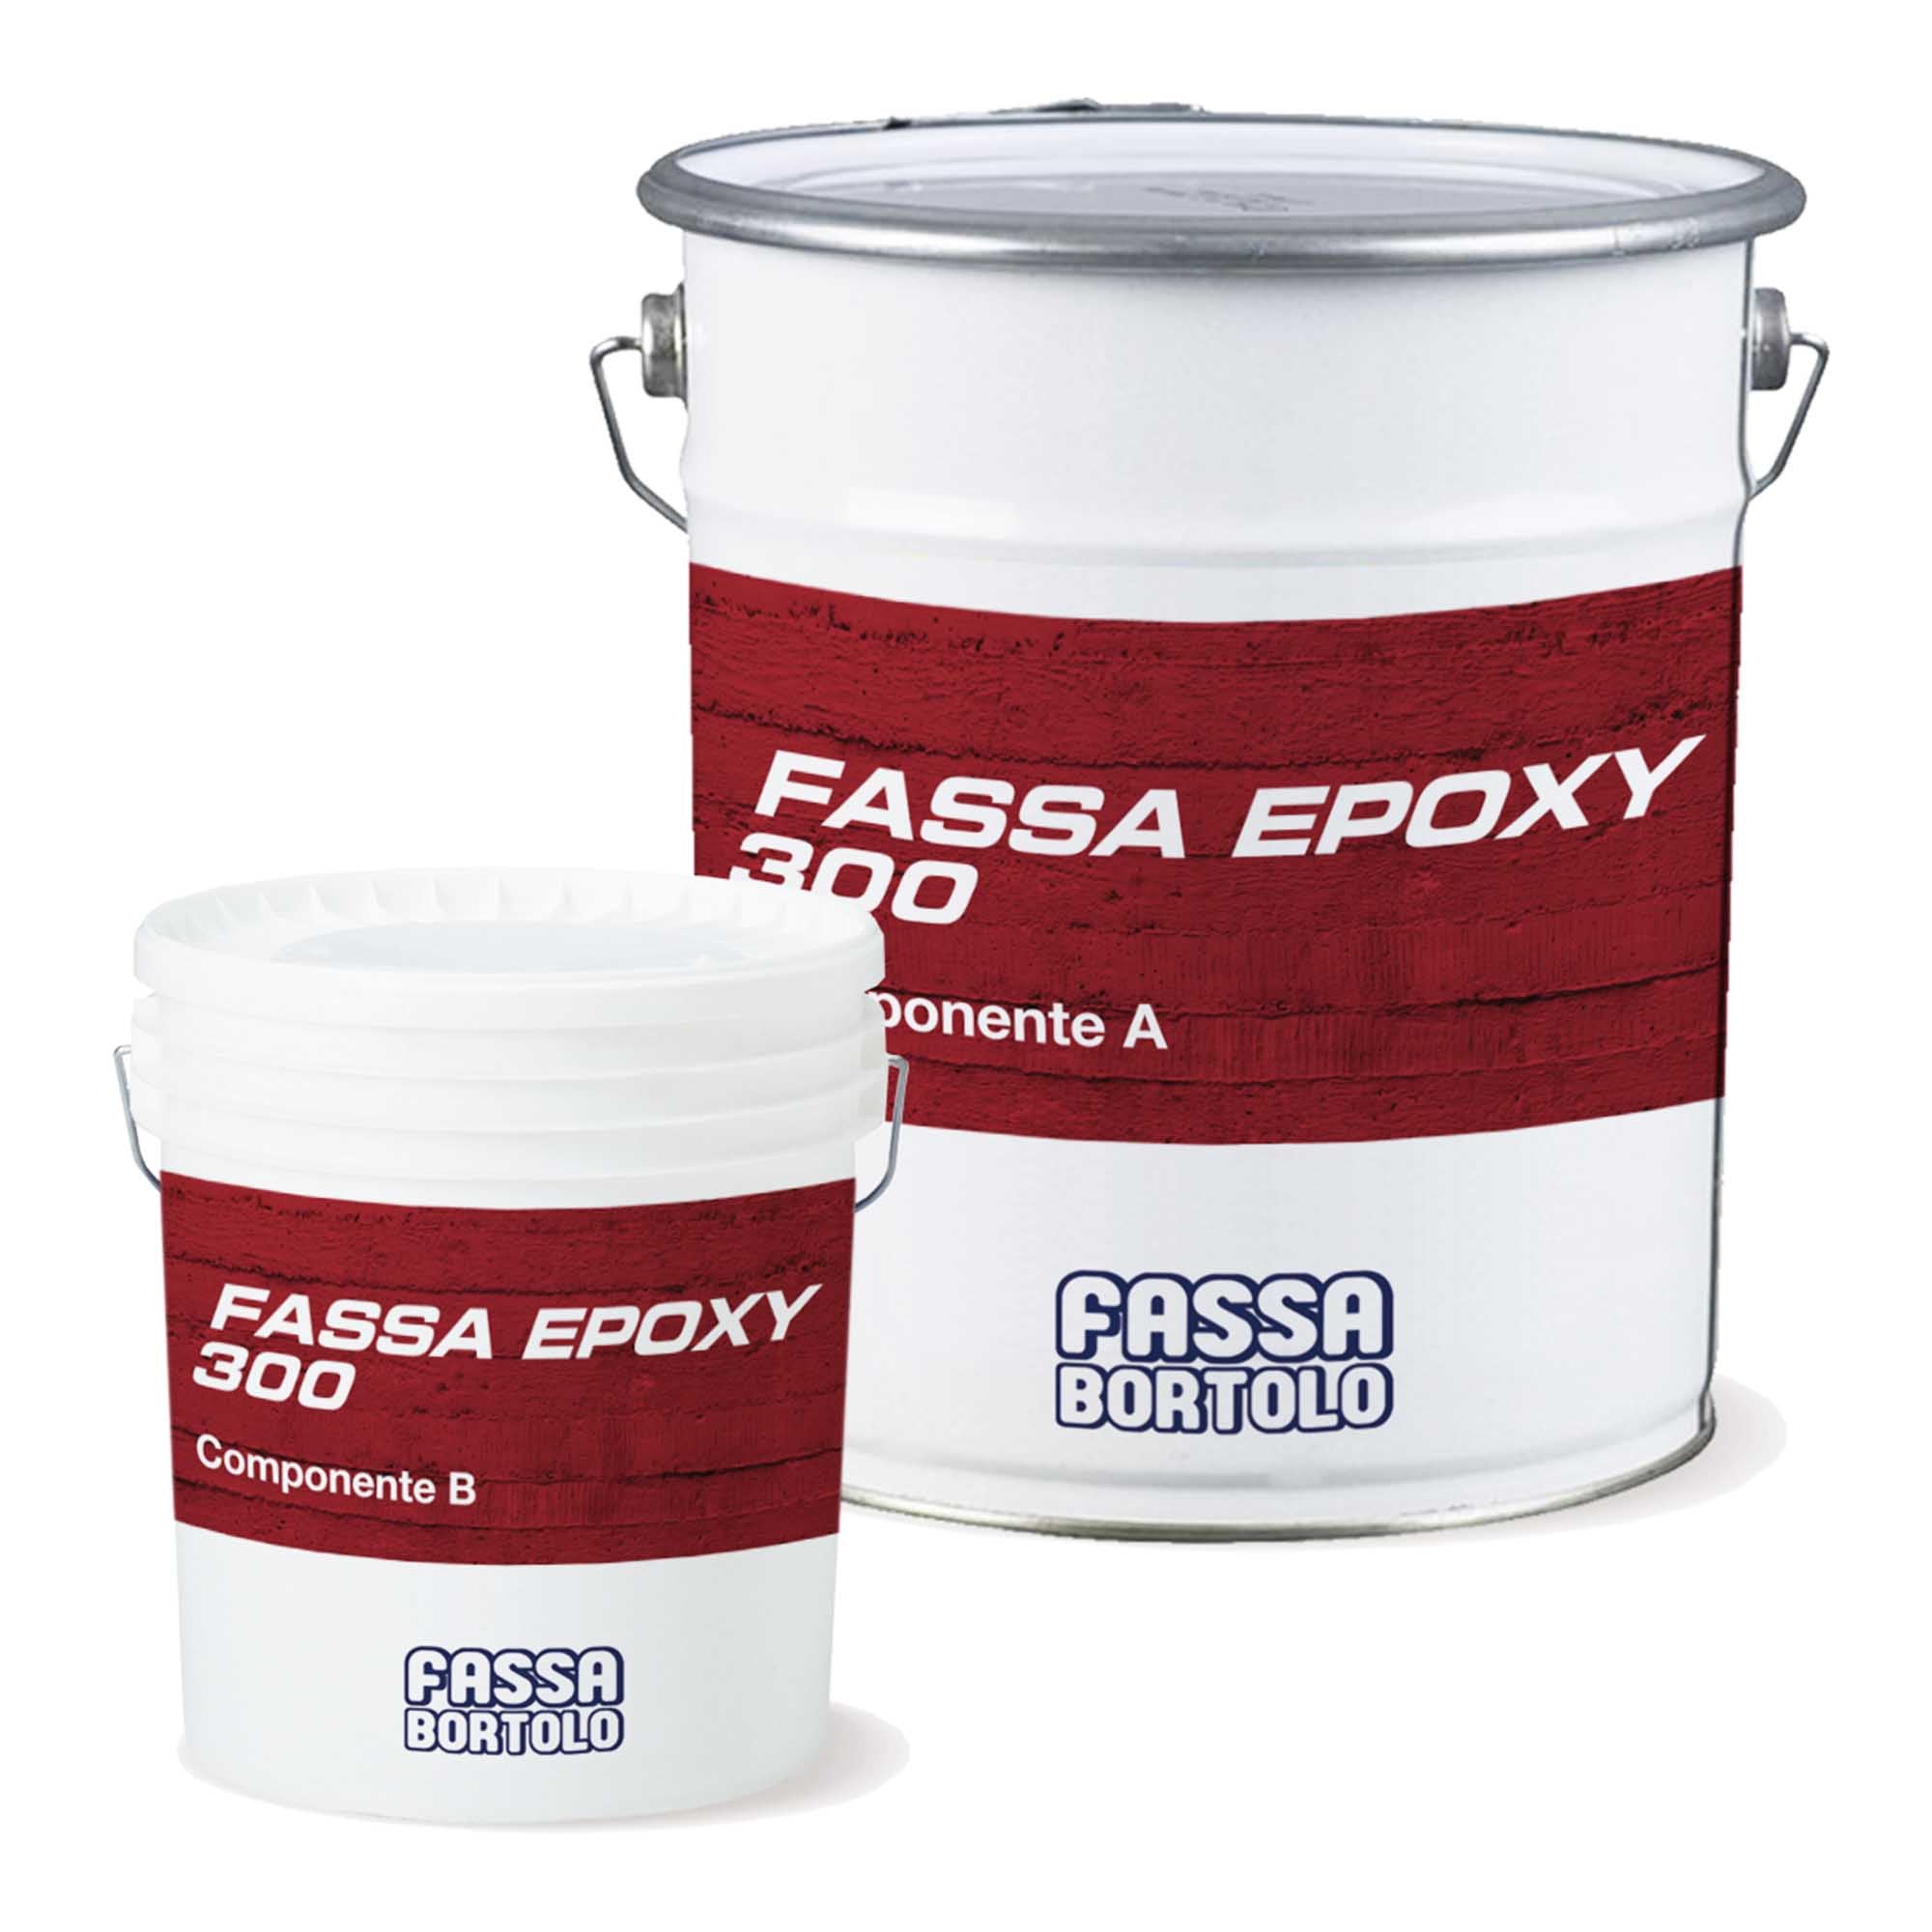 Fassa Epoxy 300